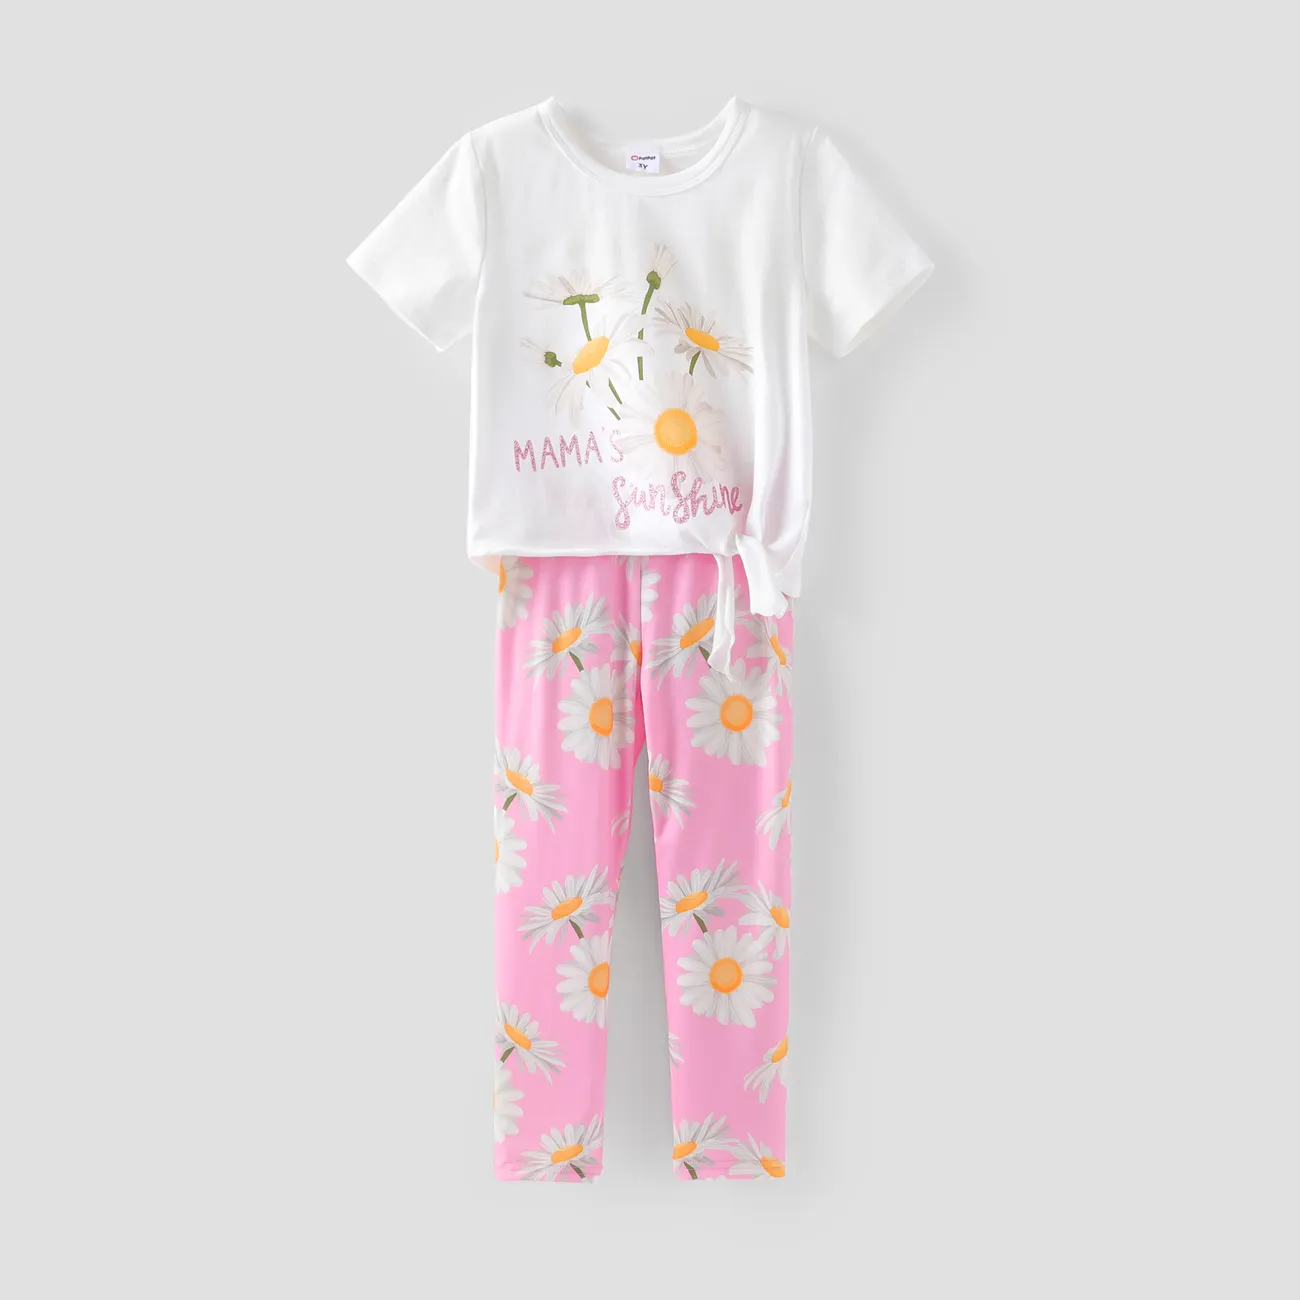 Toddler/Kid Girl 2pcs Sweet Floral Print Tee and Leggings Set Pink big image 1